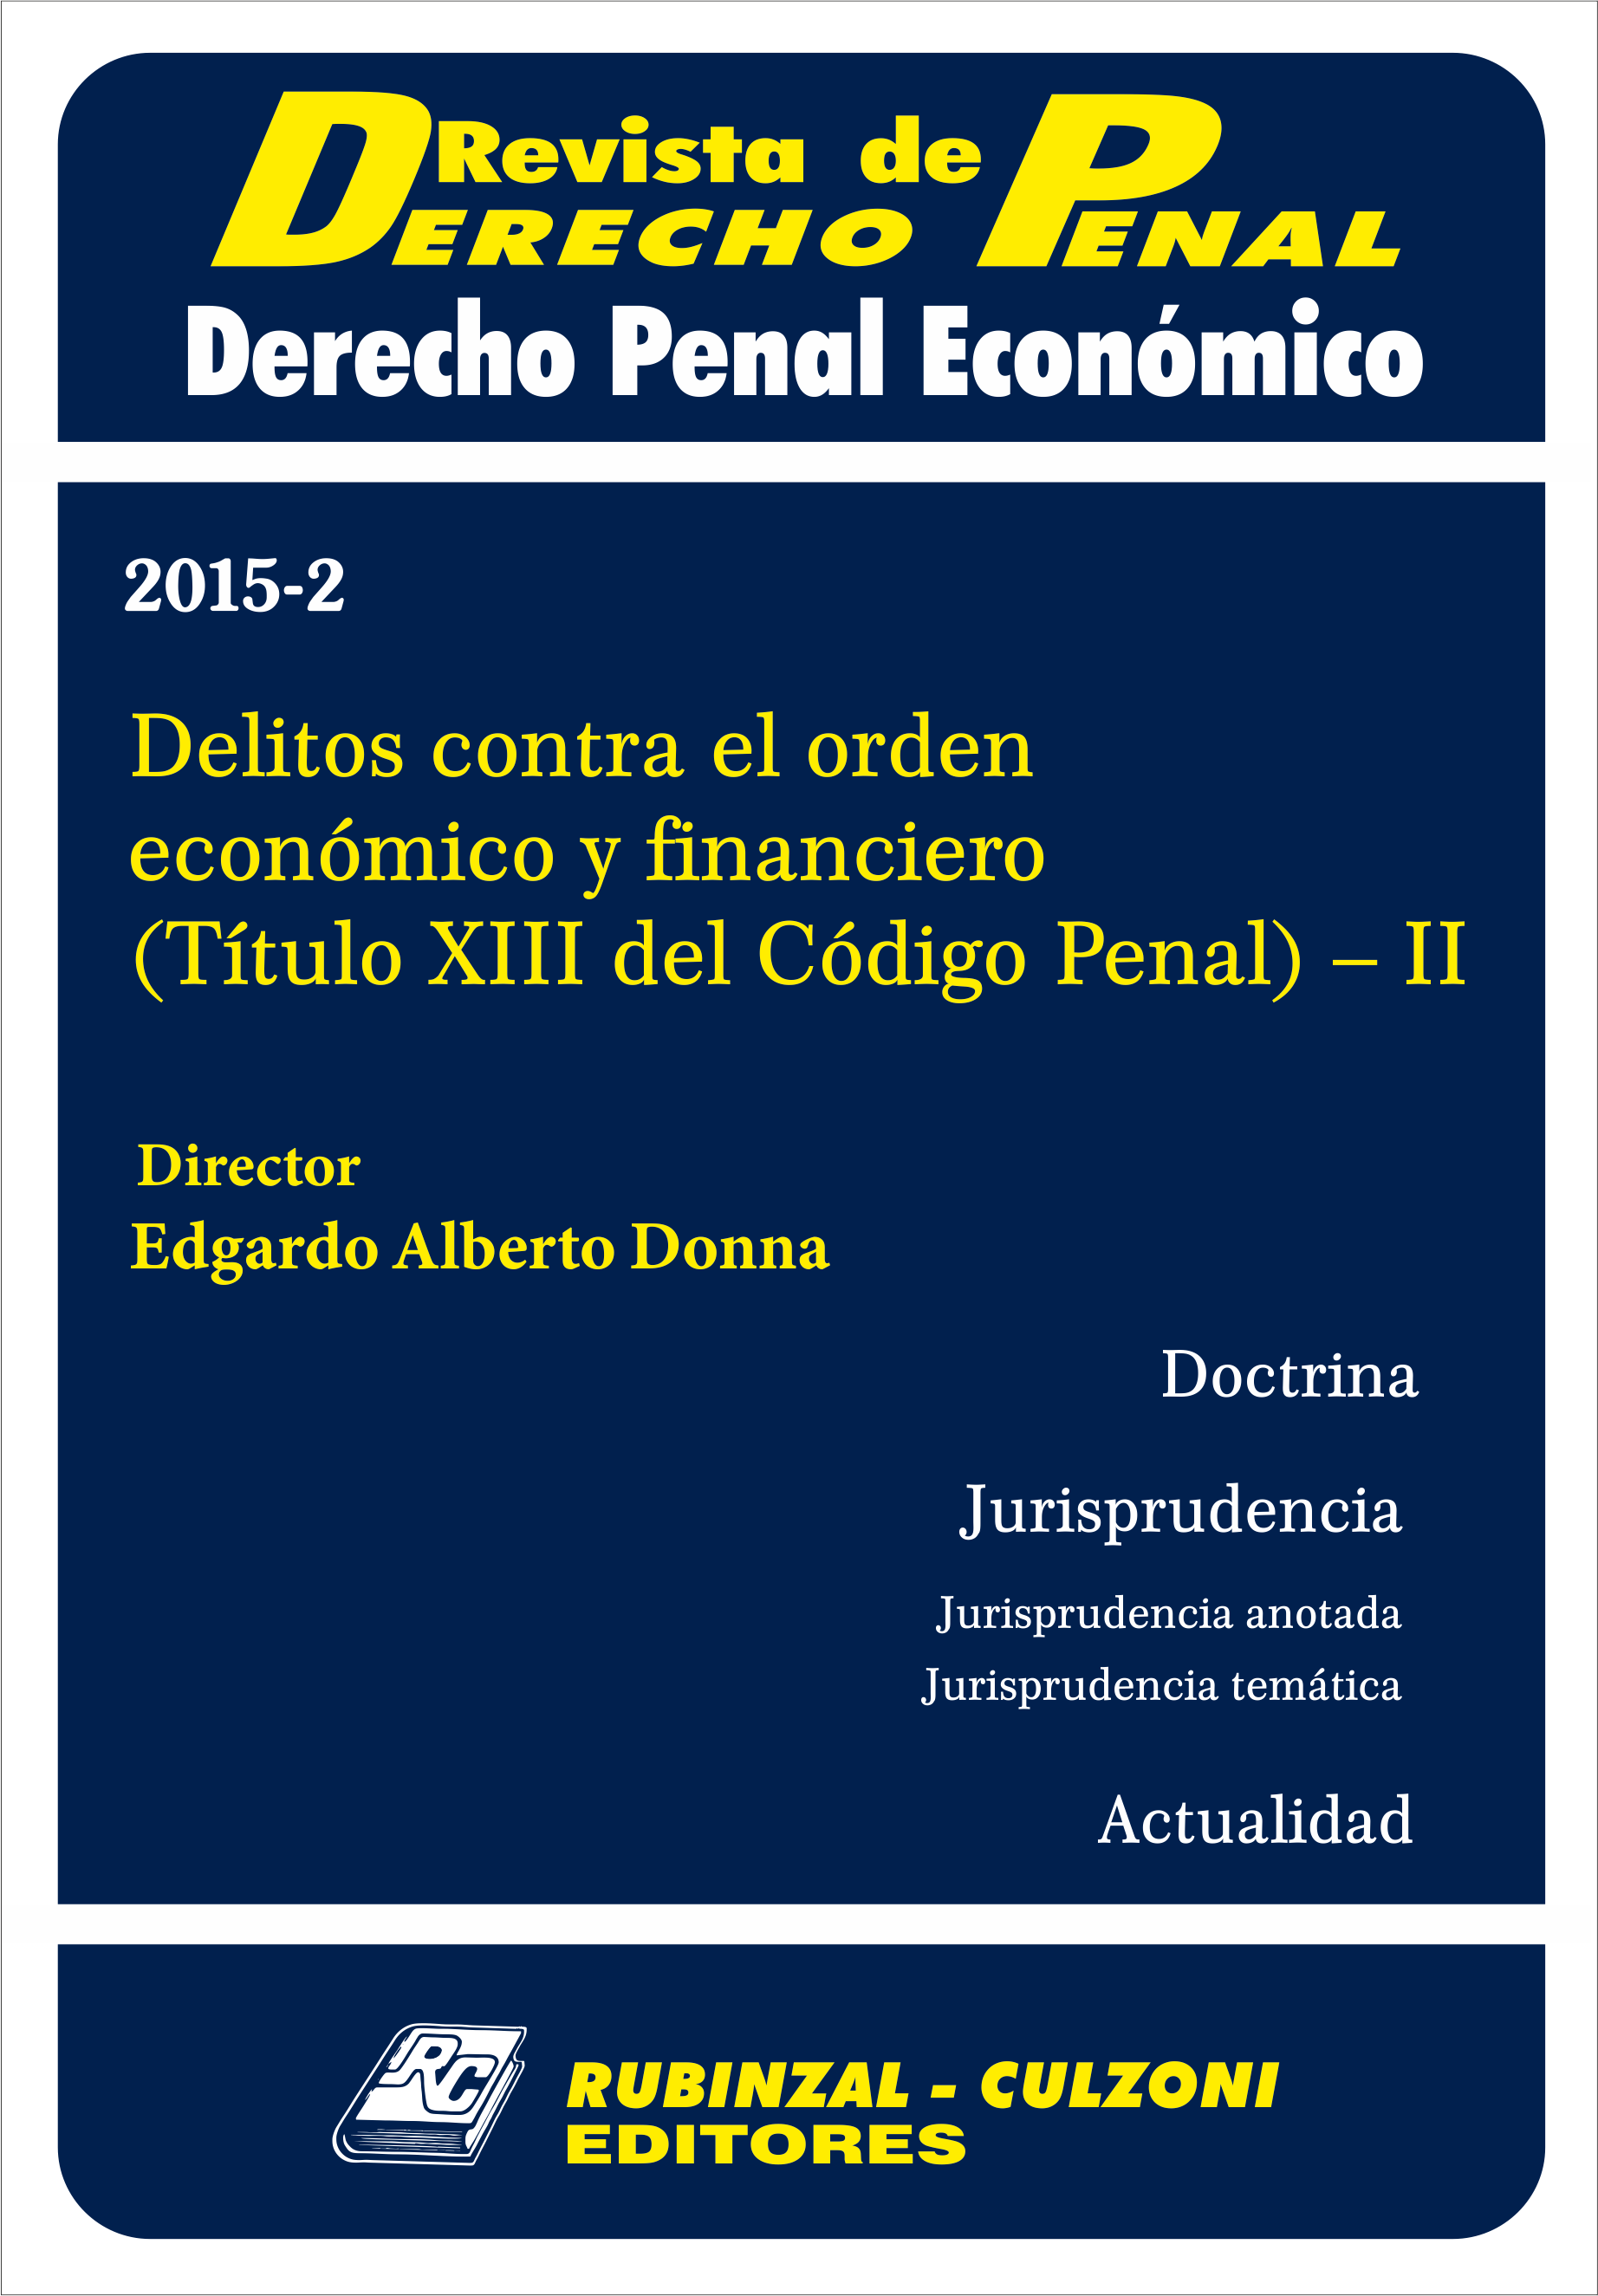 Revista de Derecho Penal Económico - Delitos contra el orden económico y financiero 